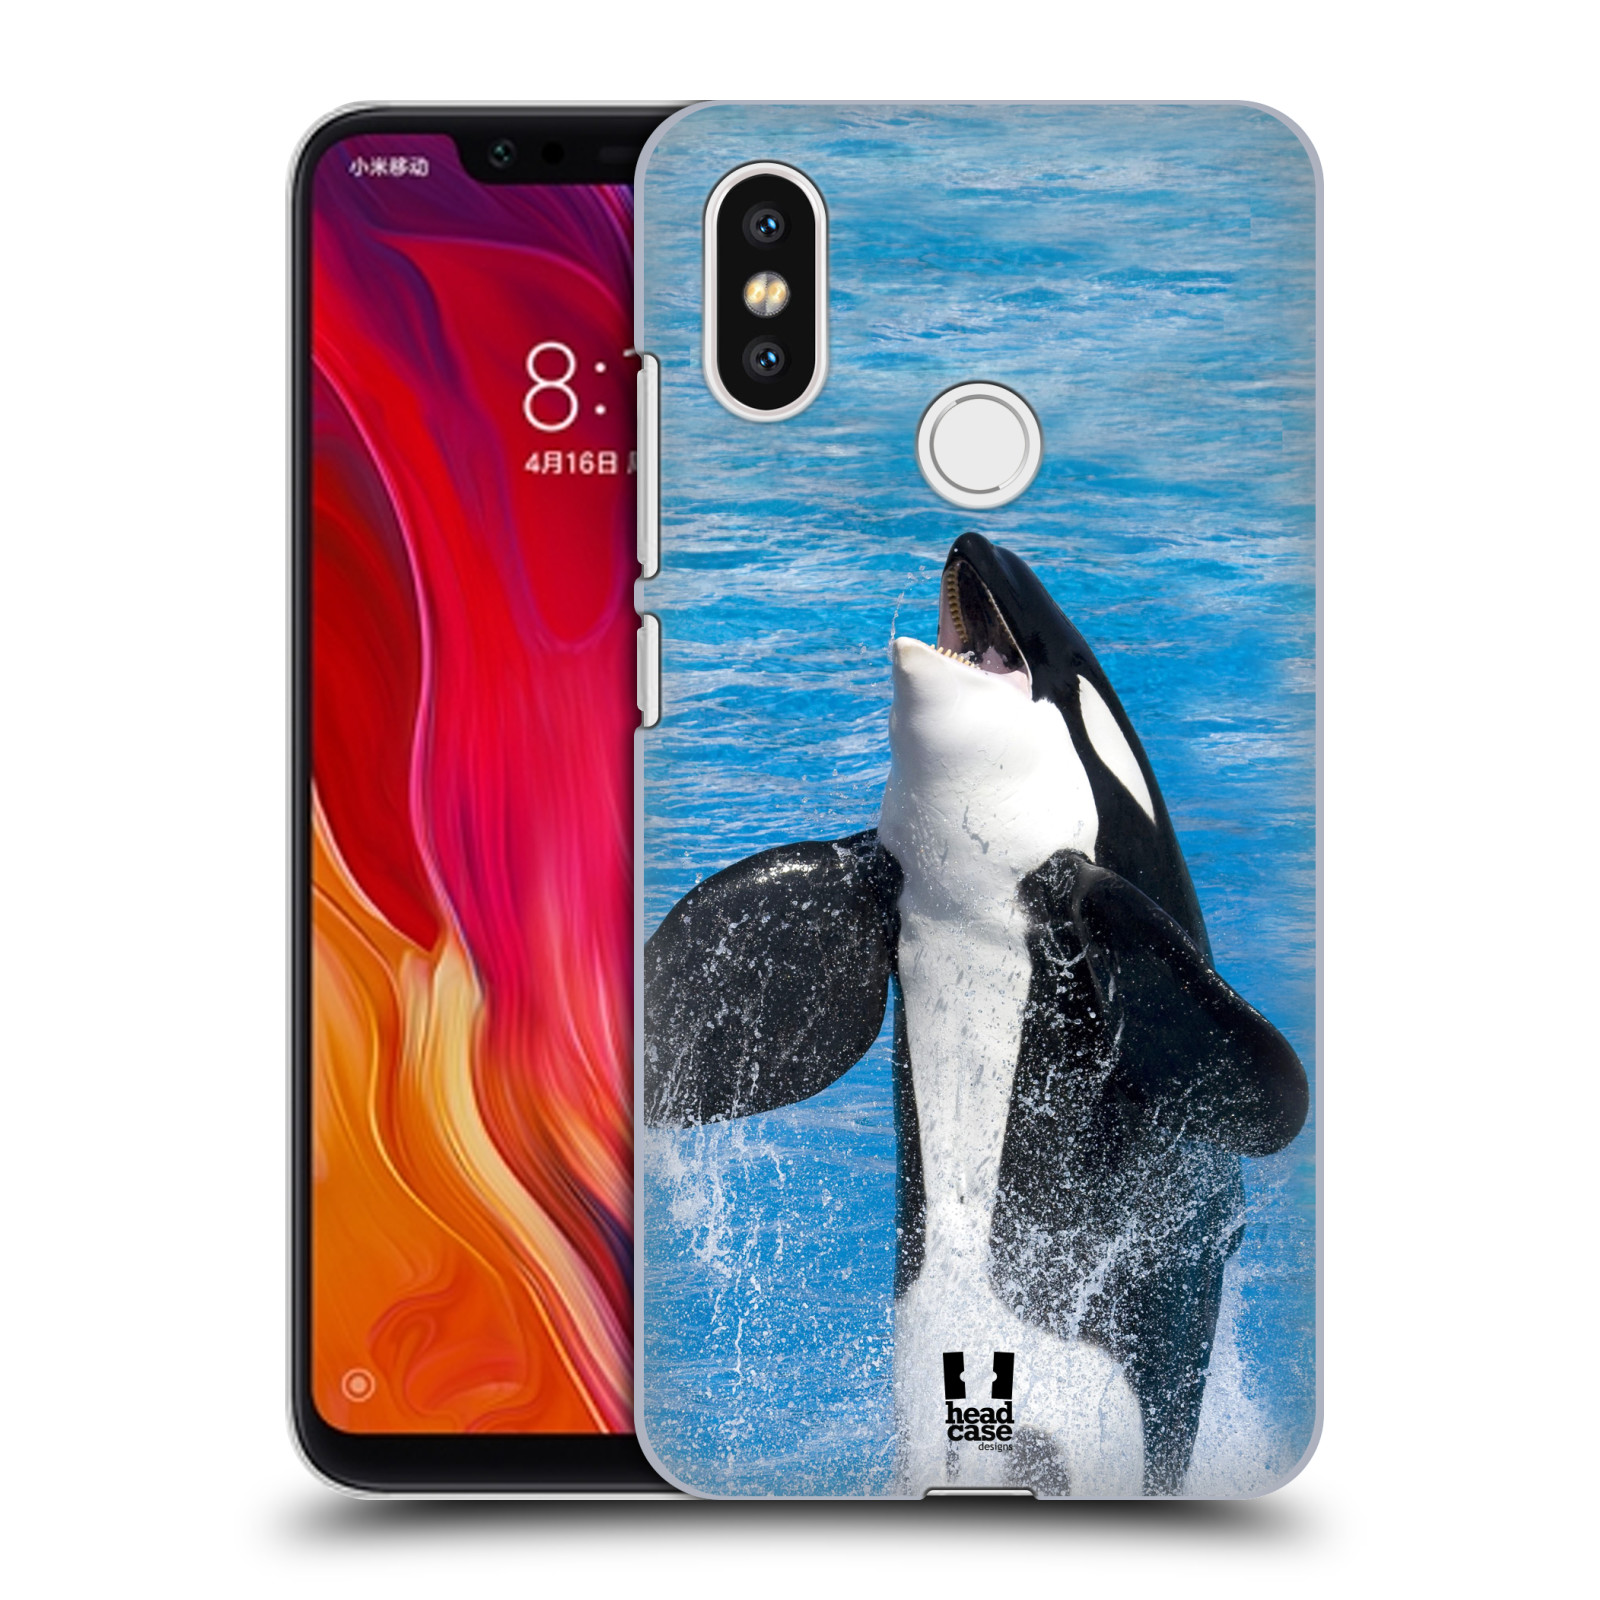 HEAD CASE plastový obal na mobil Xiaomi Mi 8 vzor slavná zvířata foto velryba